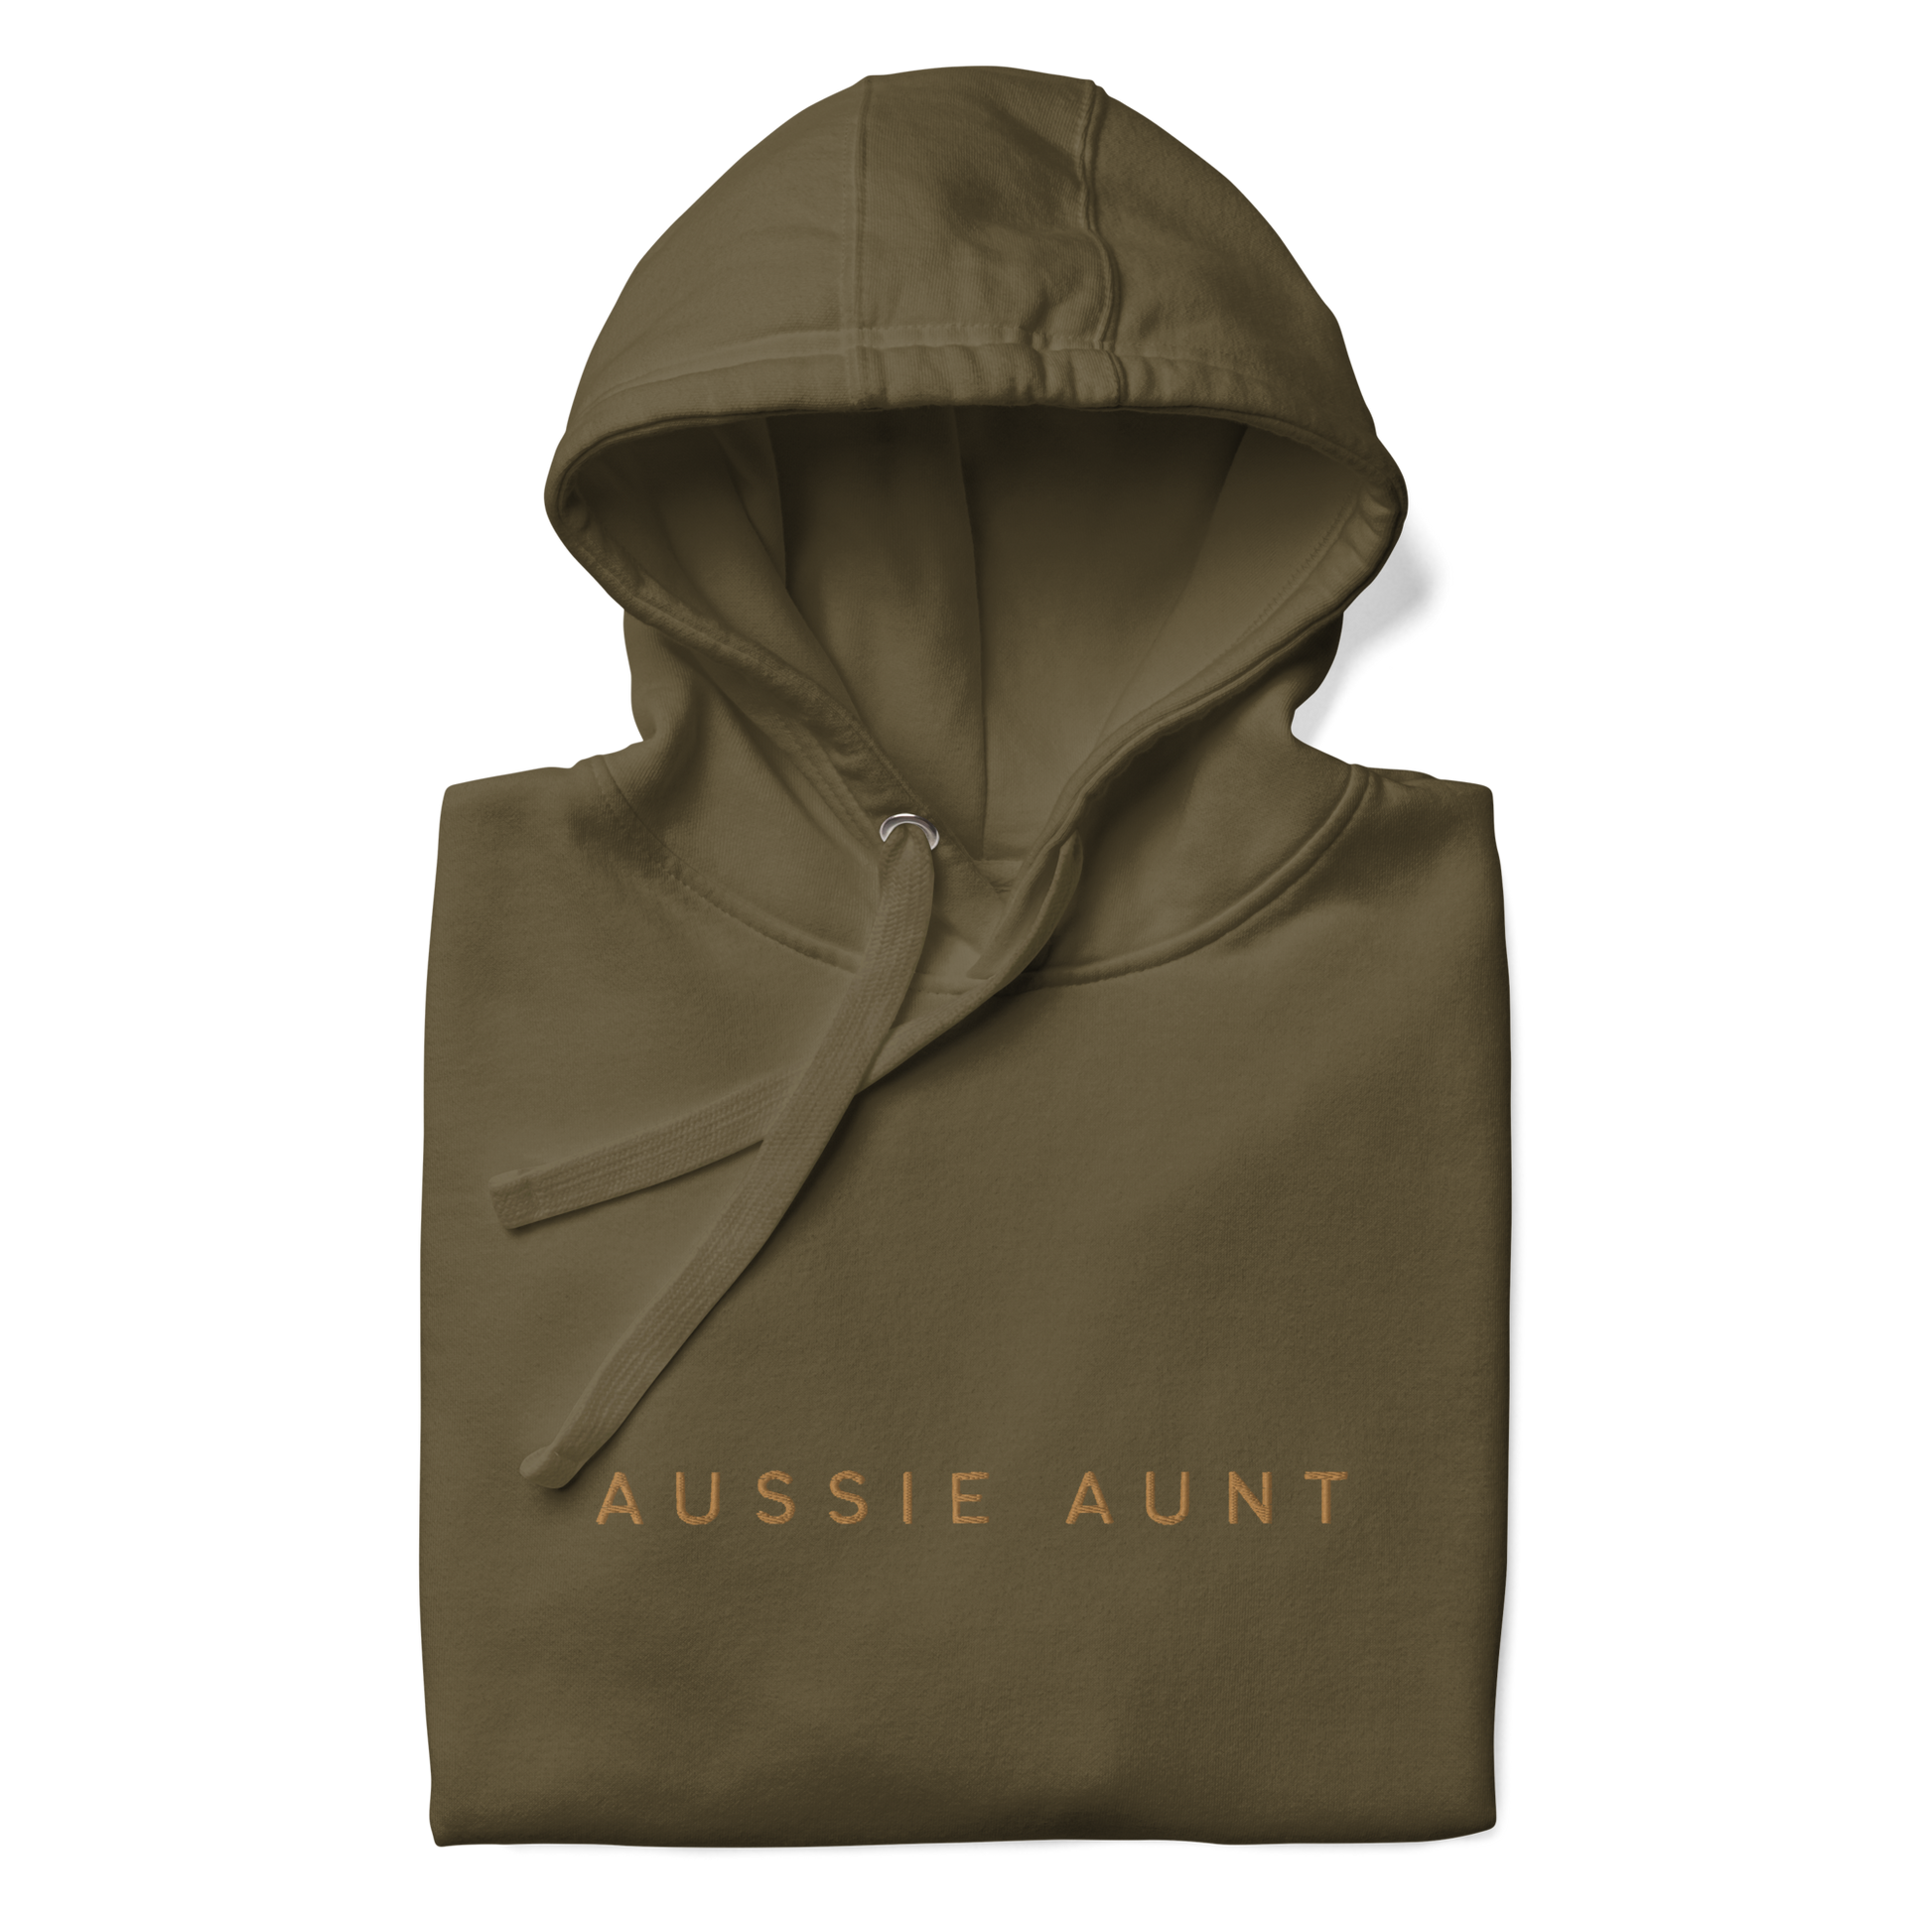 Aussie aunt hoodie